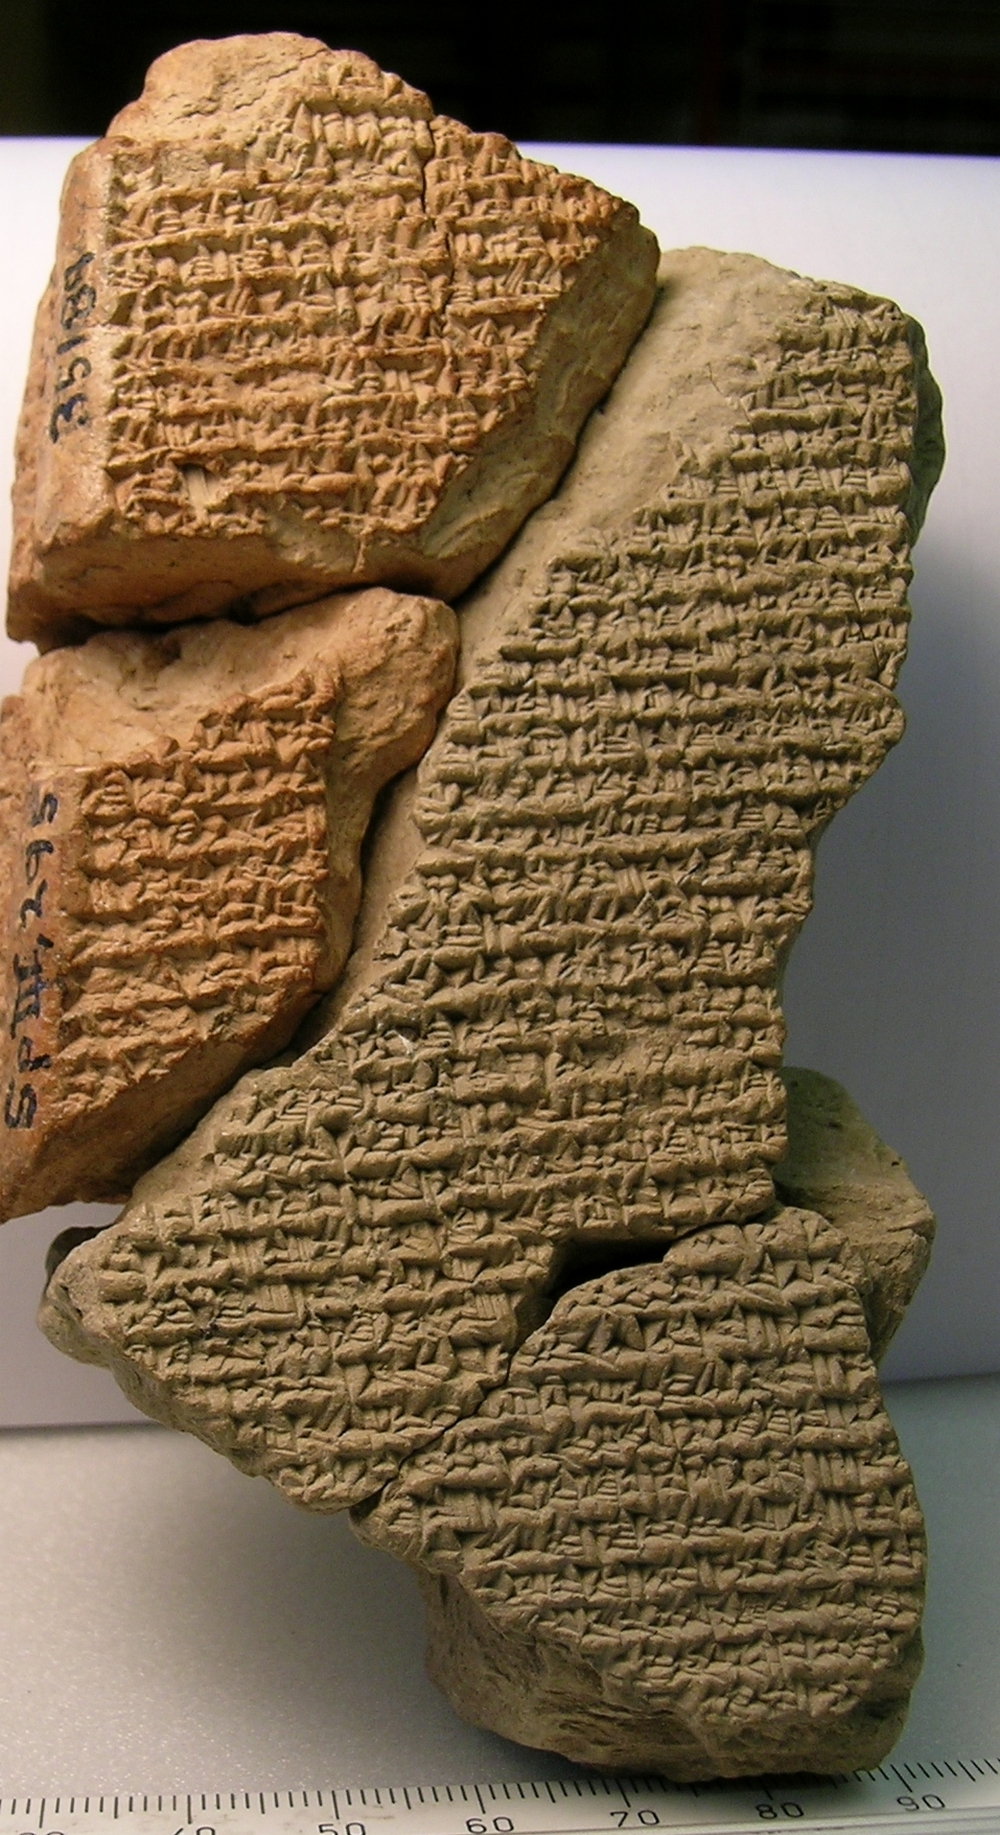 ‘Die maand hoorde ik het volgende’: Babylonische chronografische teksten uit de Hellenistische periode